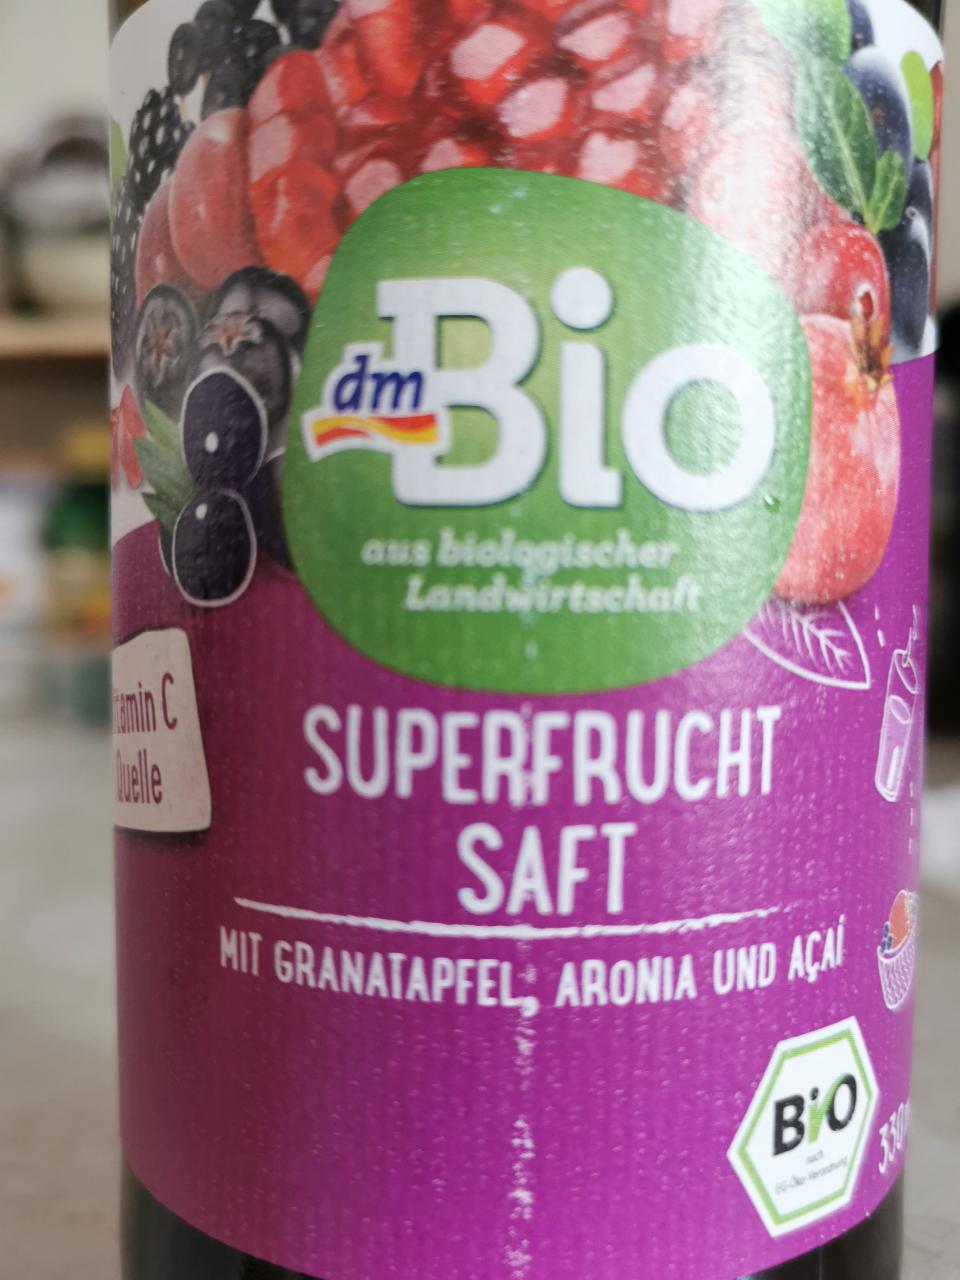 Fotografie - Superfrucht saft mit granatapfel, aronia und acai (bio šťáva granátové jablko, arónie, acai) dmBio